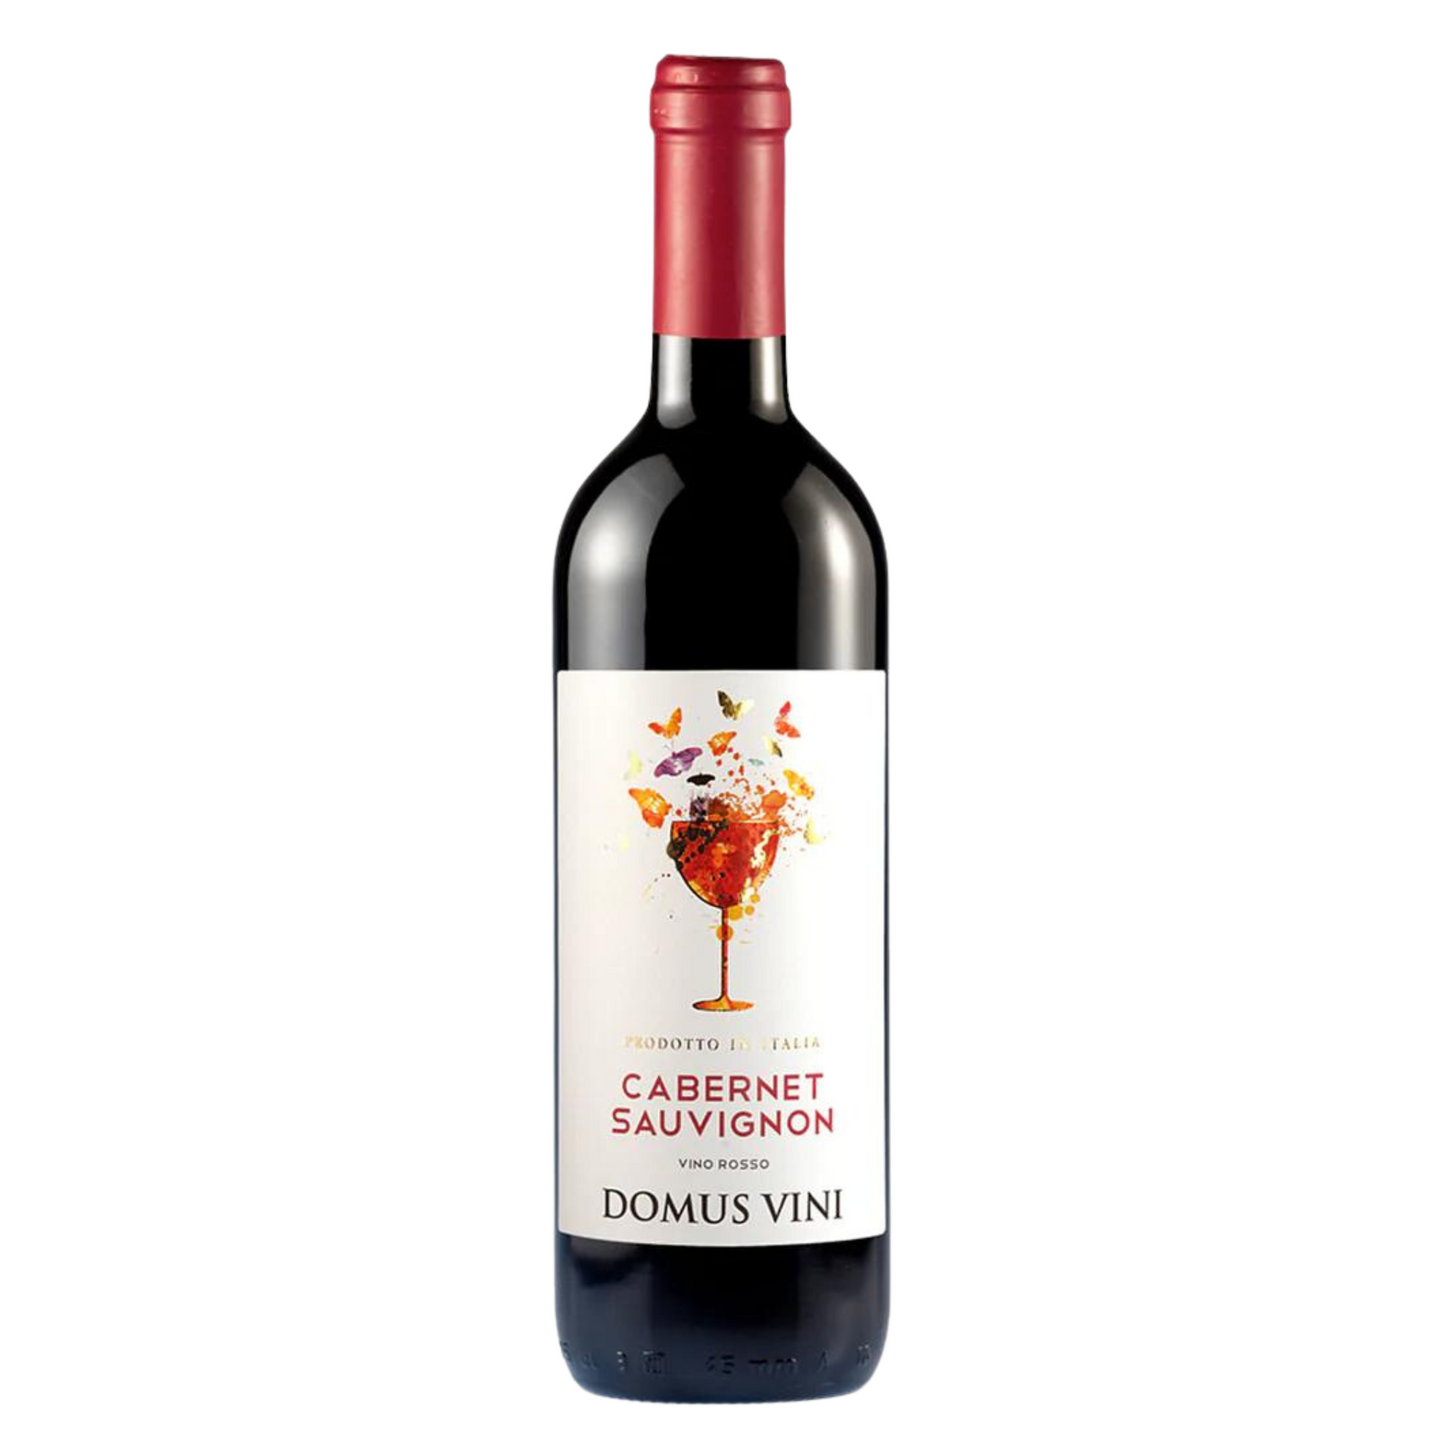 Domus Vini Cabernet Sauvignon Vino Rosso NV (750 ml)